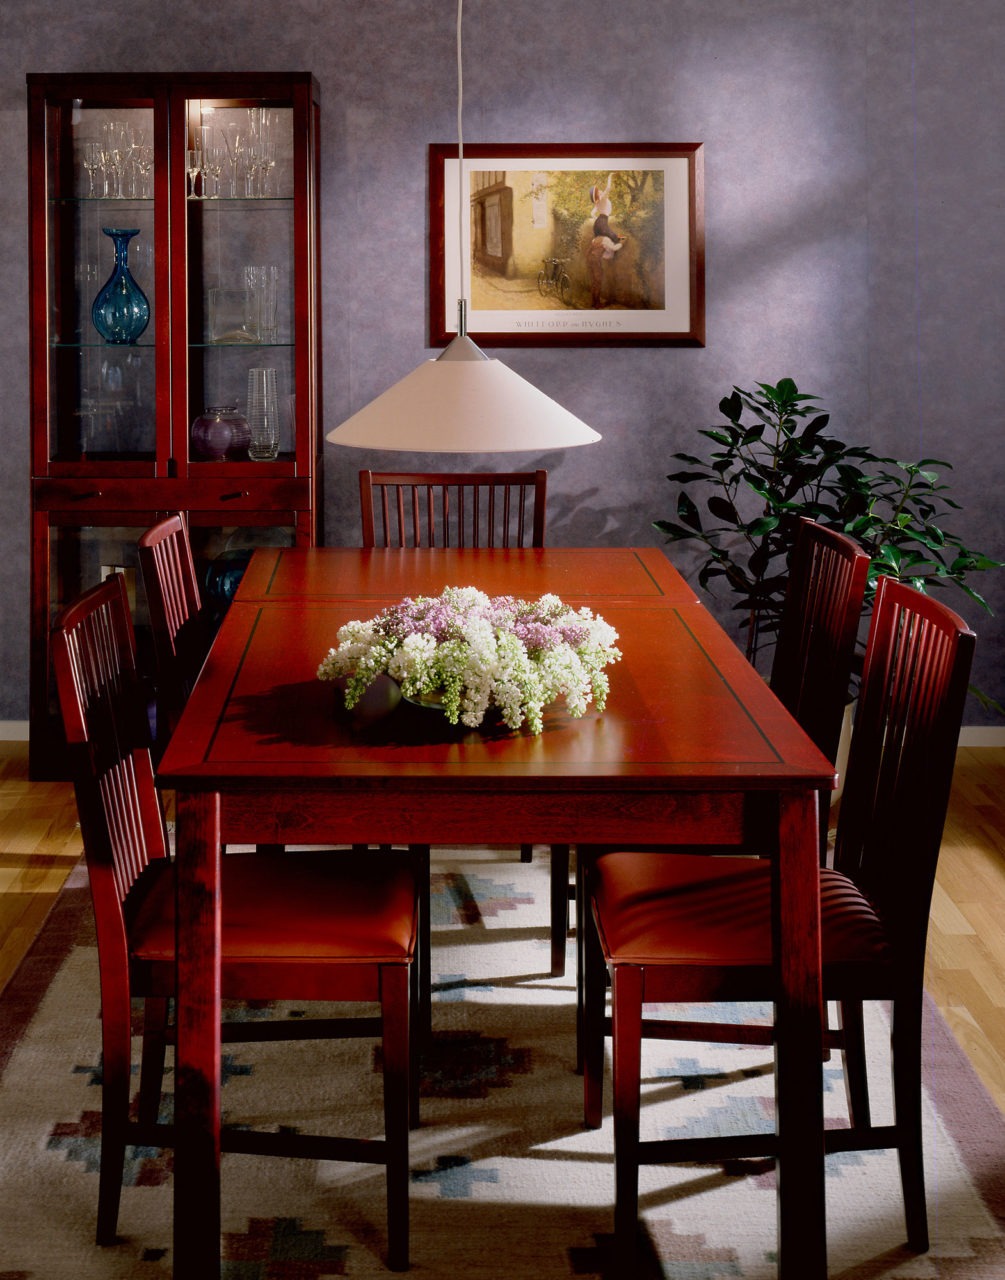 Esszimmer mit langem, elegantem Esstisch und Stühlen in Rot-Braun, allesamt Modell STOCKHOLM, auf gemustertem Teppich.